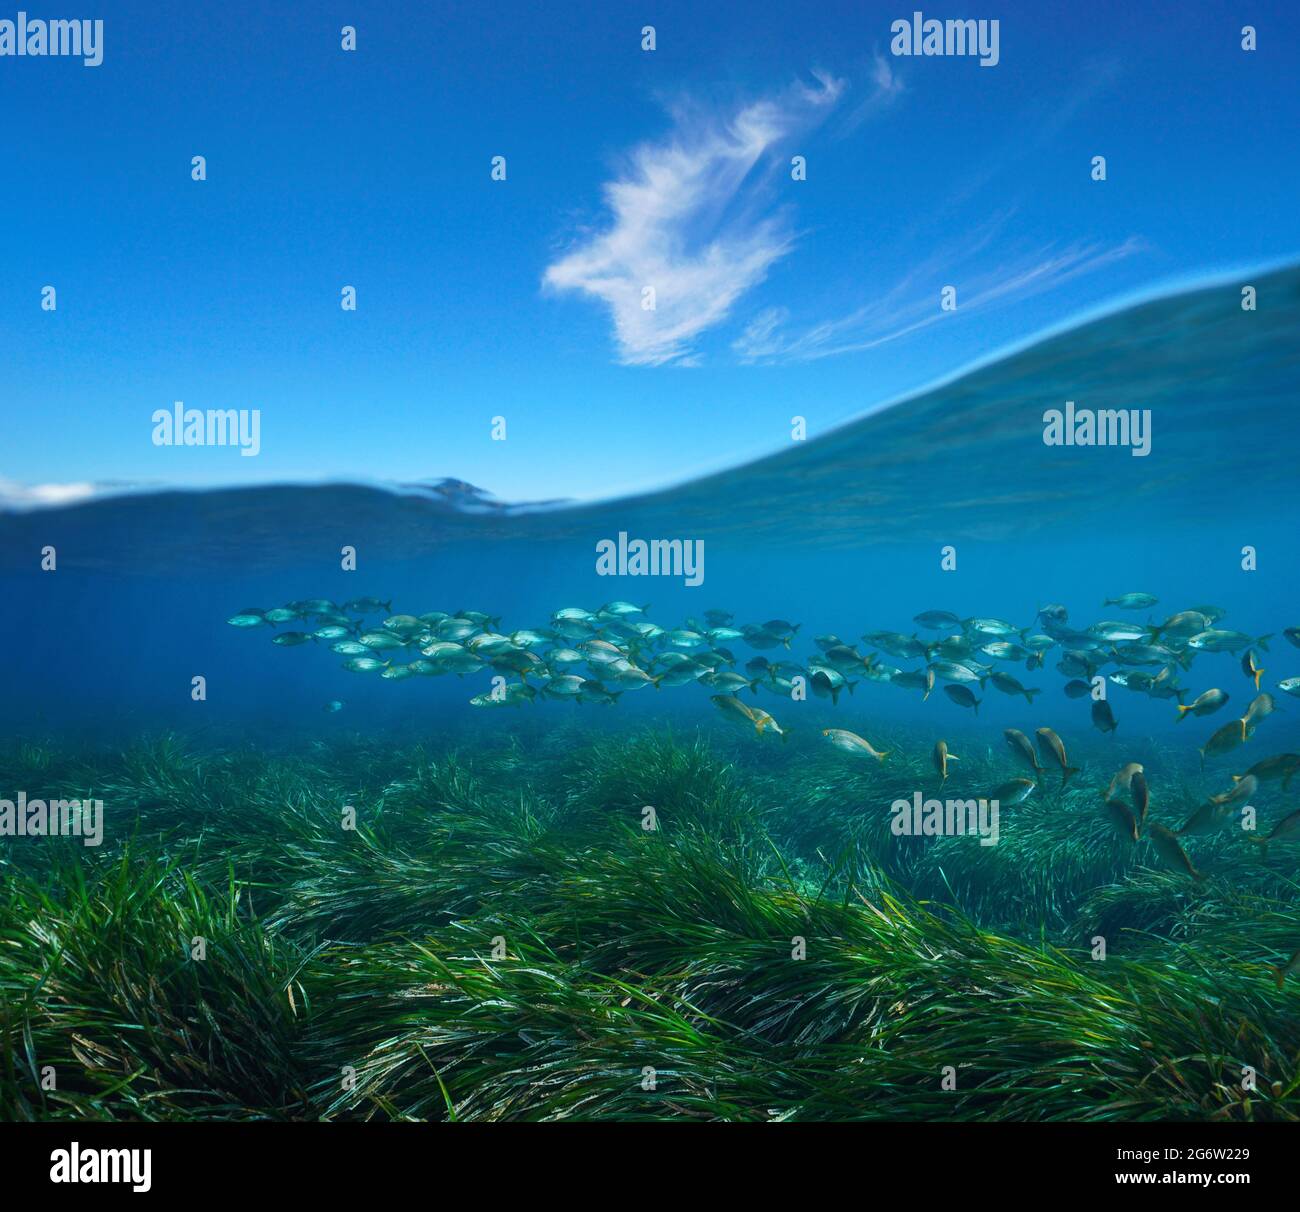 Herbes marines avec poissons mer sous-marine et ciel bleu avec nuage, vue partagée sur et sous la surface de l'eau, mer Méditerranée Banque D'Images